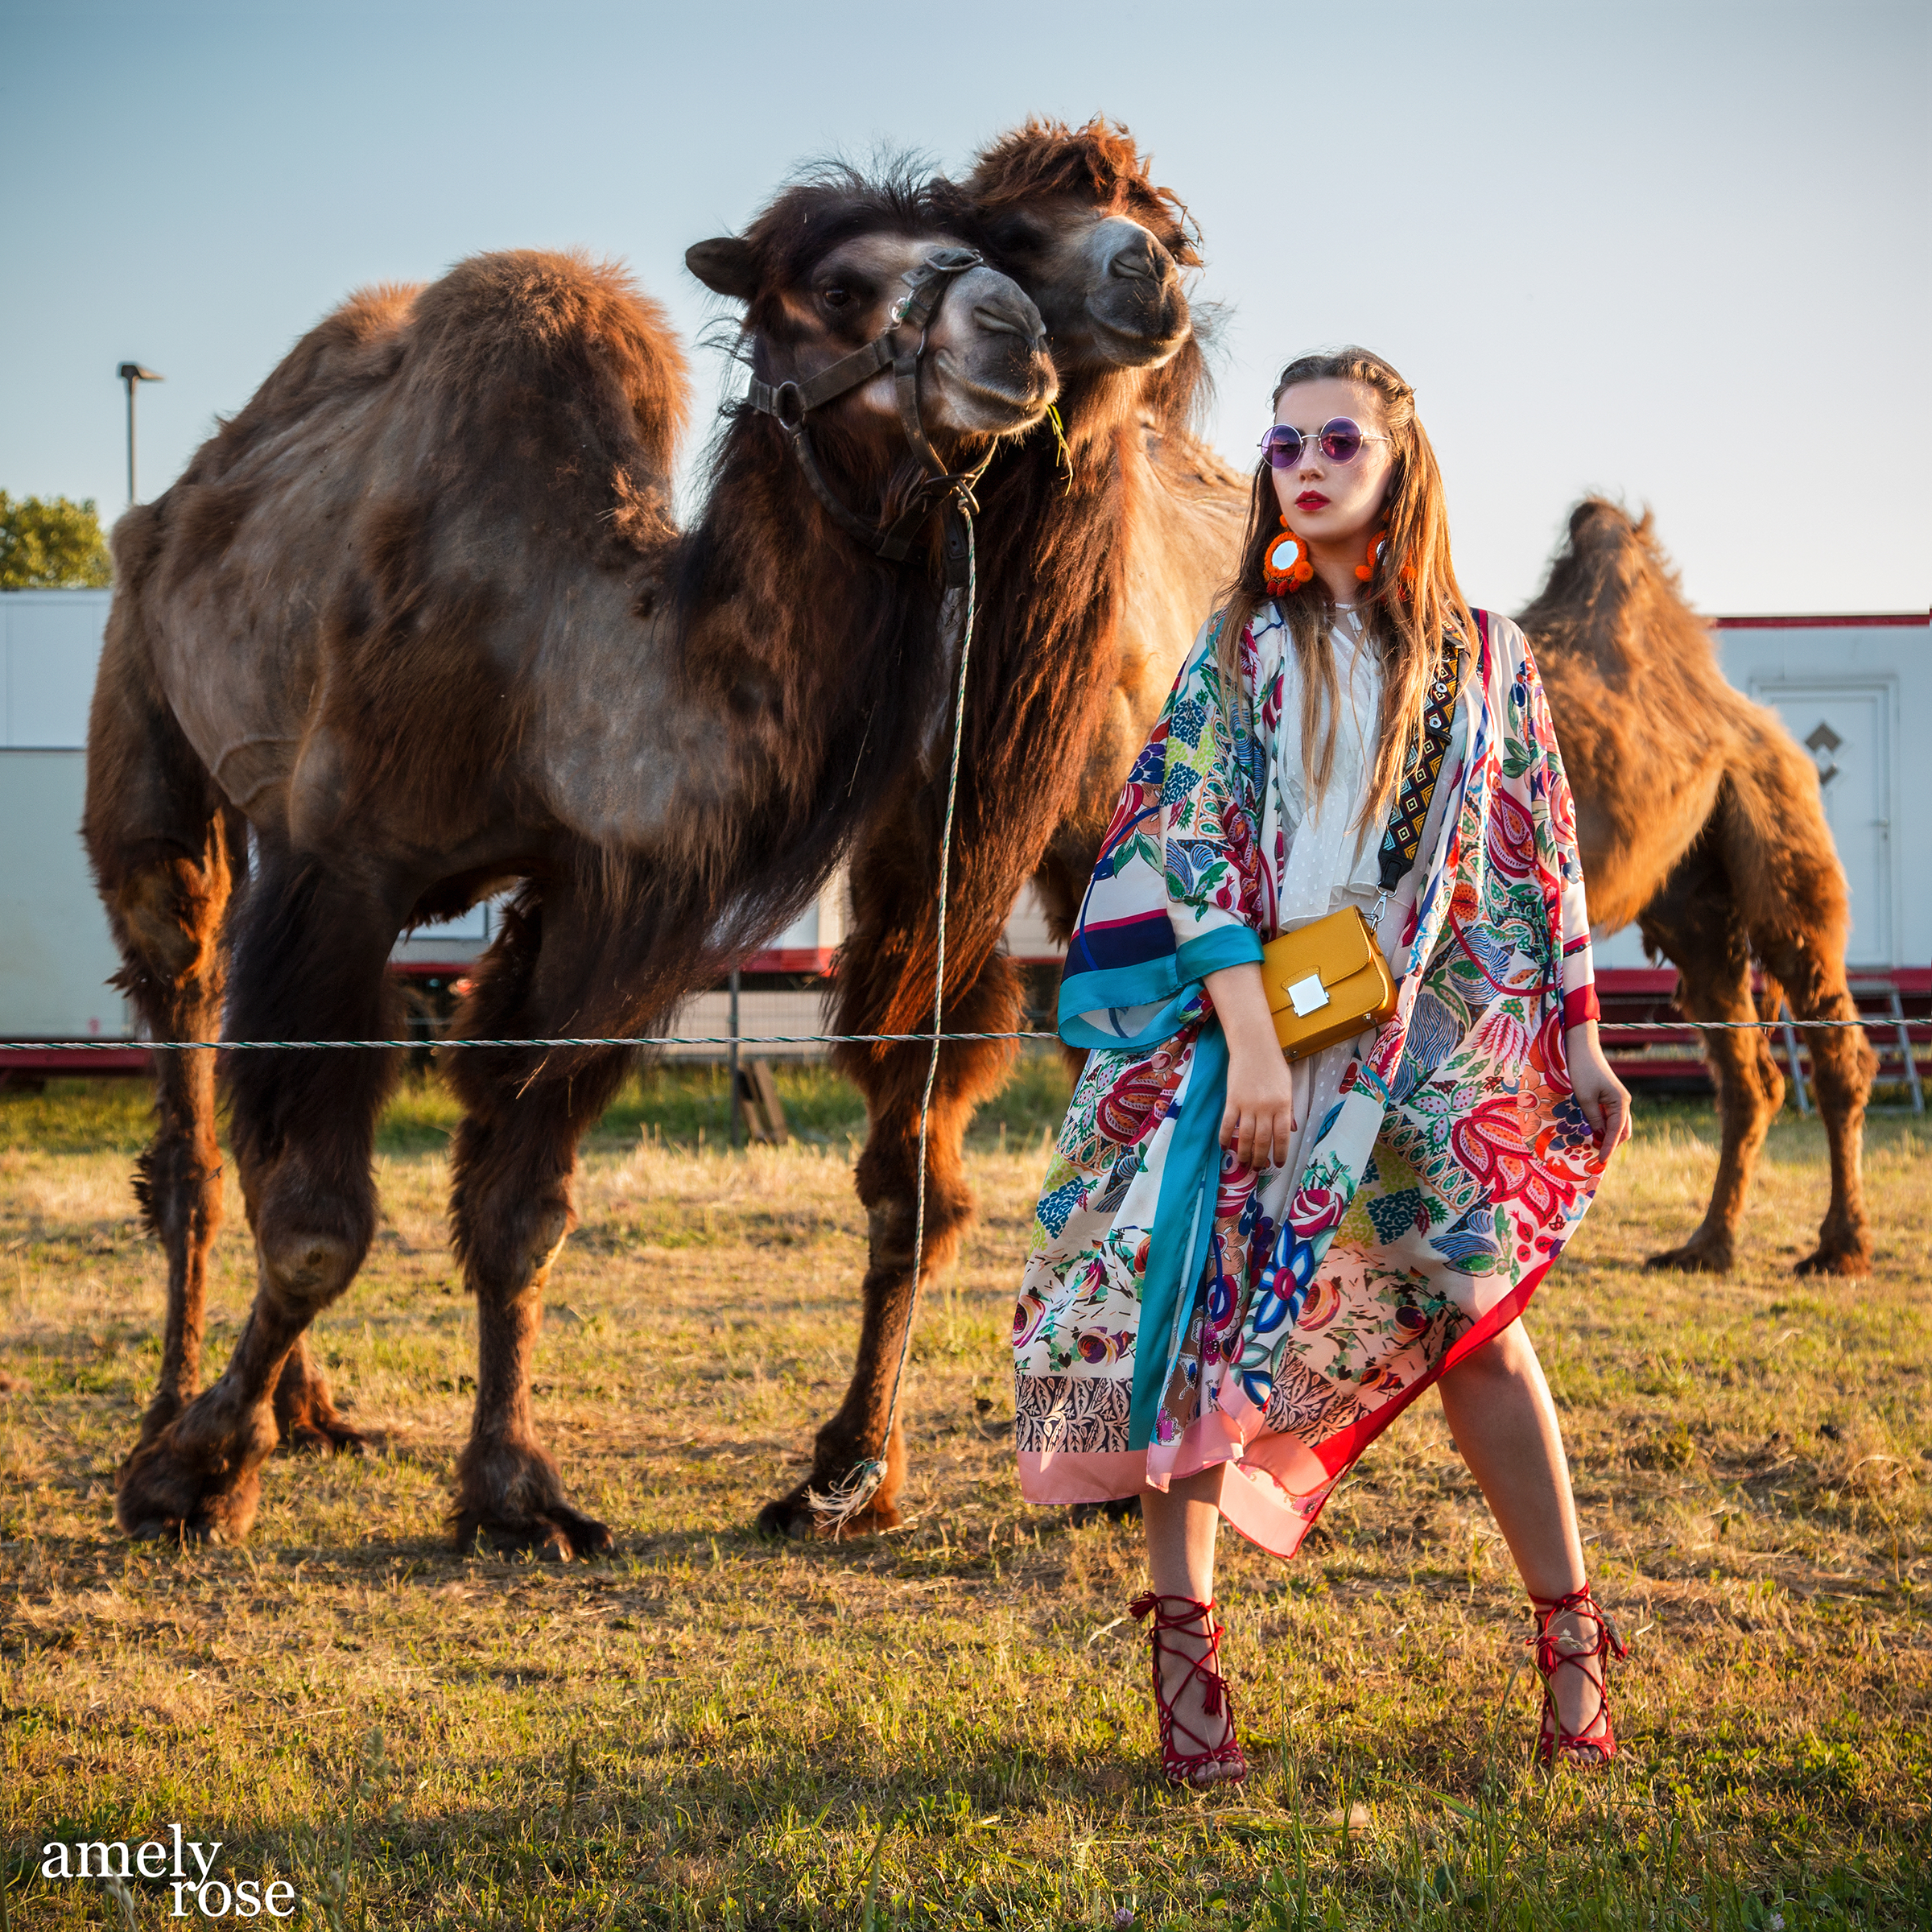 amely rose in einem summerlook oder festival outfit coachella im zara kimono mit kamelen tierfotografie